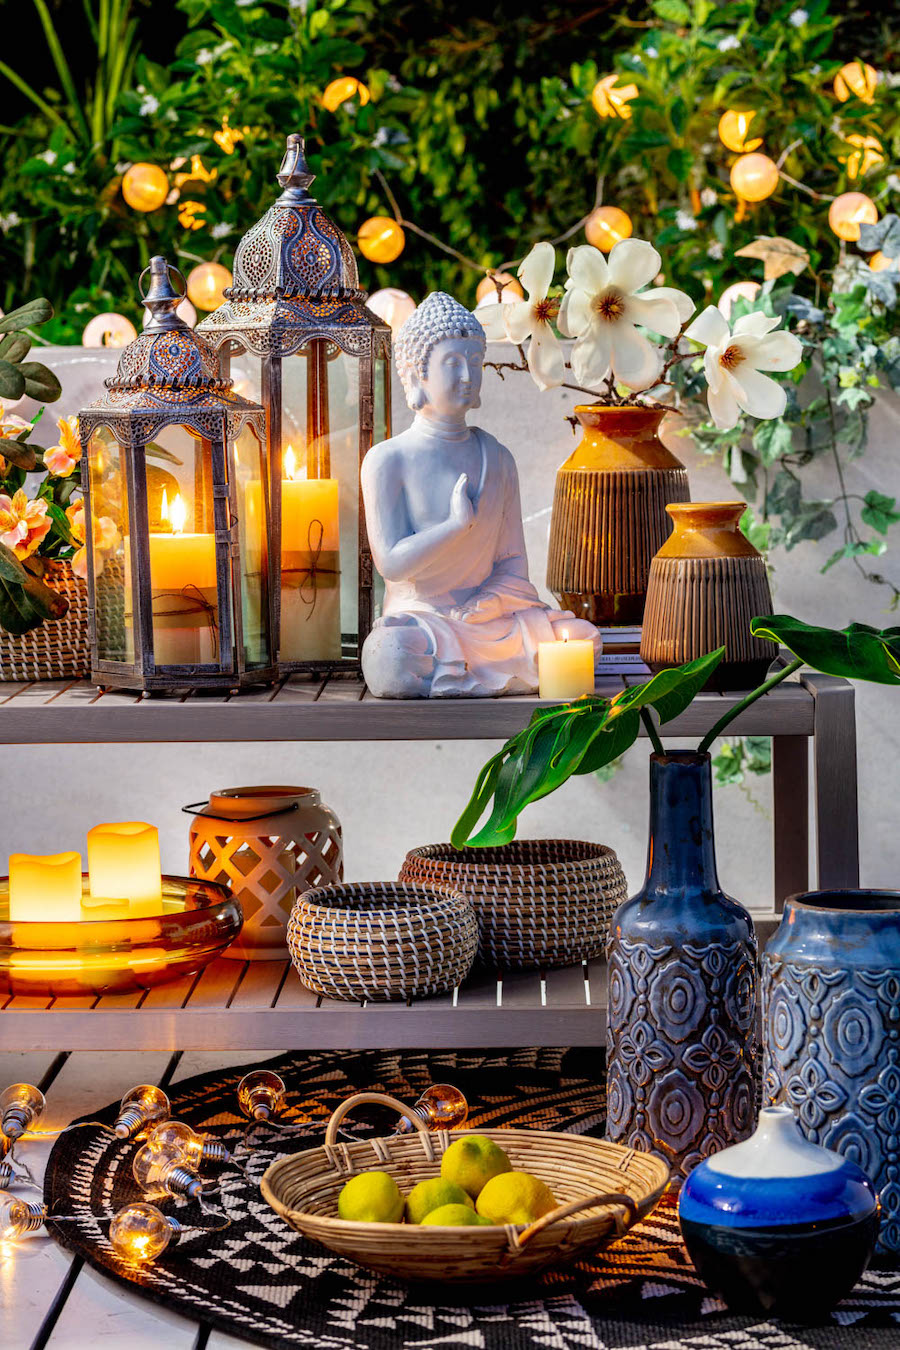 Detalle de un mueble tipo estante de dos niveles con distintos objetos decorativos, desde velas y fanales hasta figuras y floreros. Alrededor hay plantas, guirnaldas de luces y frascos decorativos.